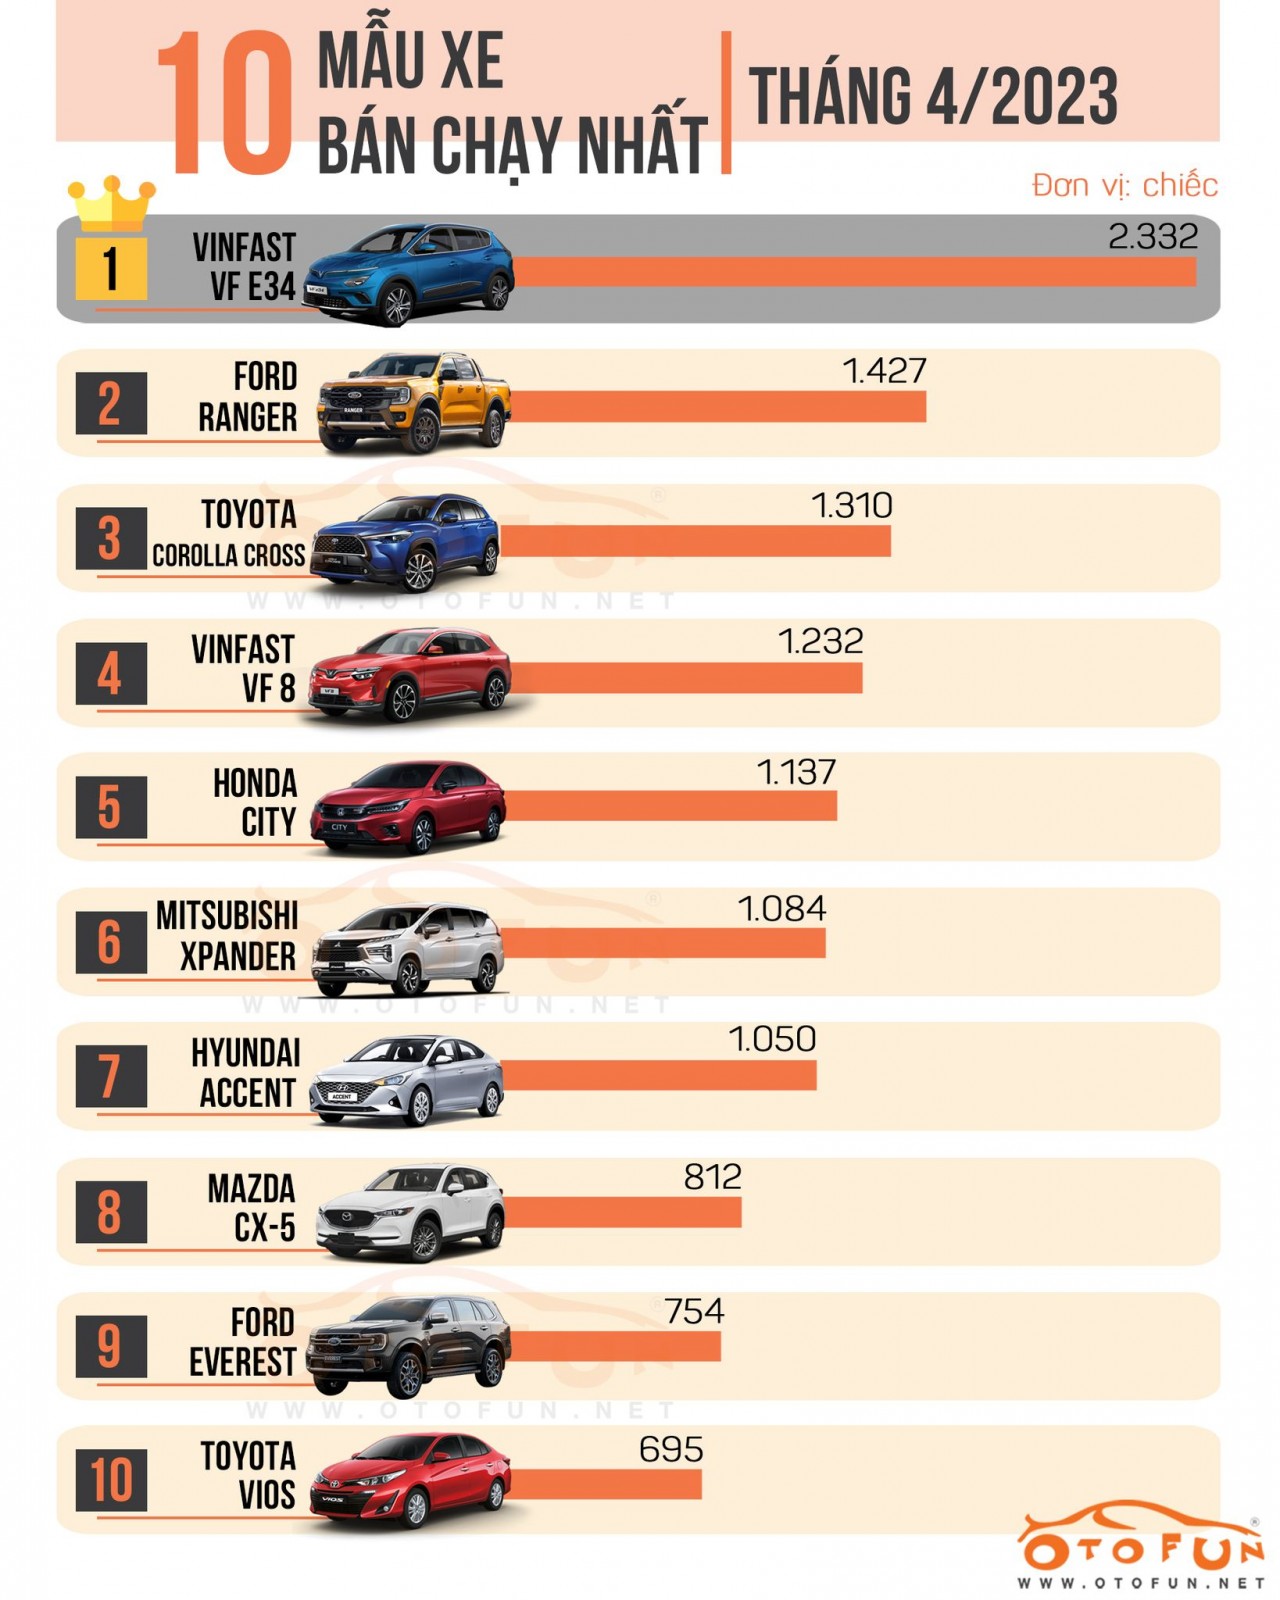 [Infographic] Top 10 xe bán chạy nhất tháng 4/2023 có nhiều bất ngờ